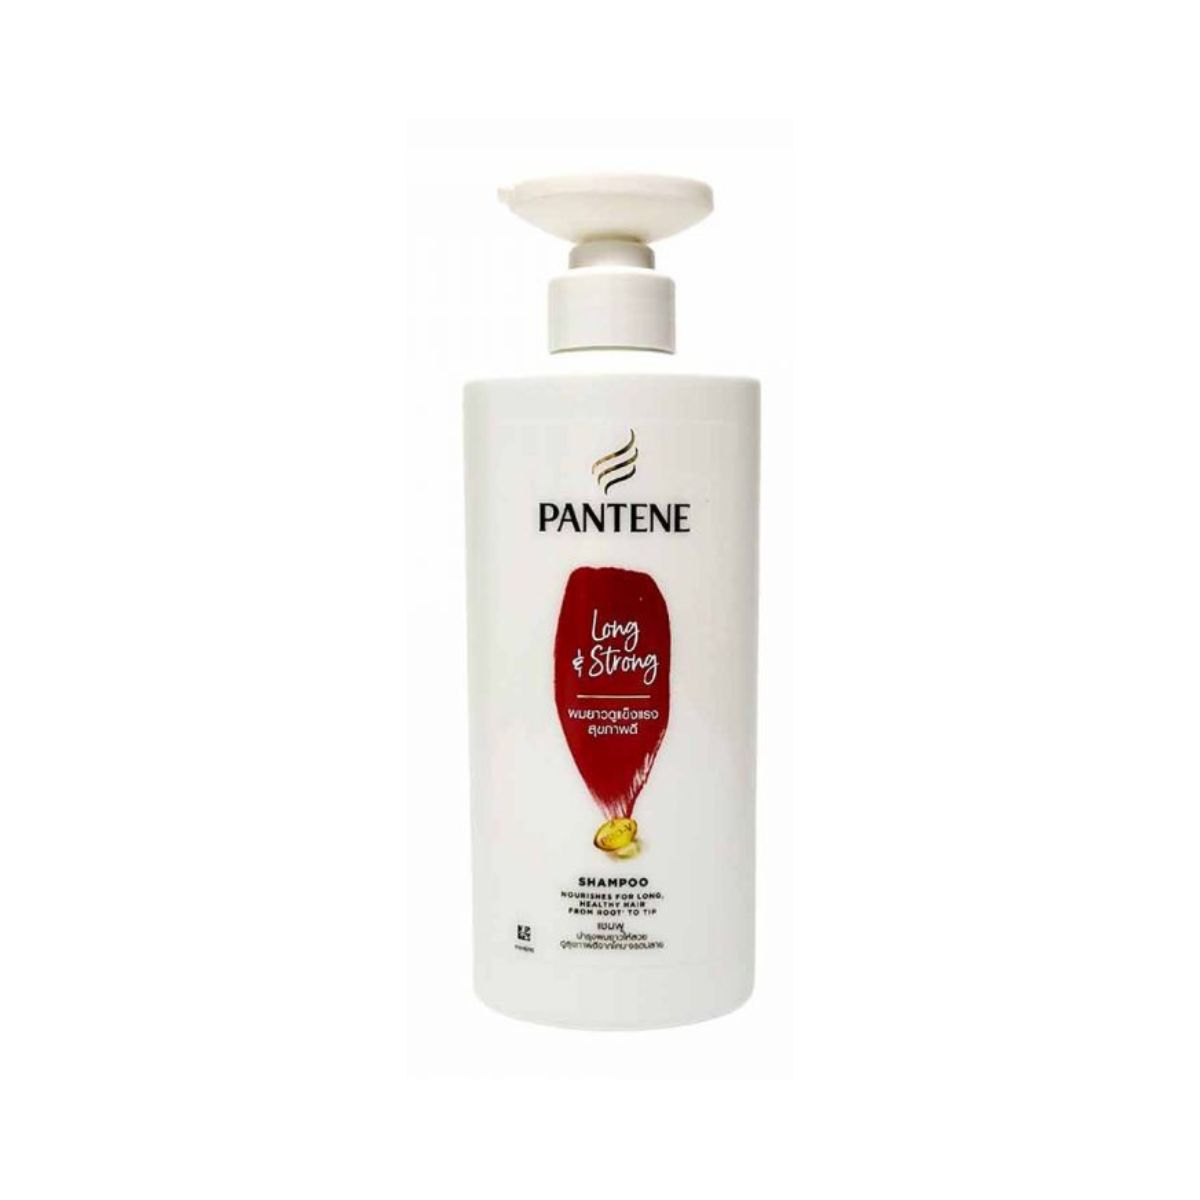 Pantene Long & Strong Shampoo - 410ml